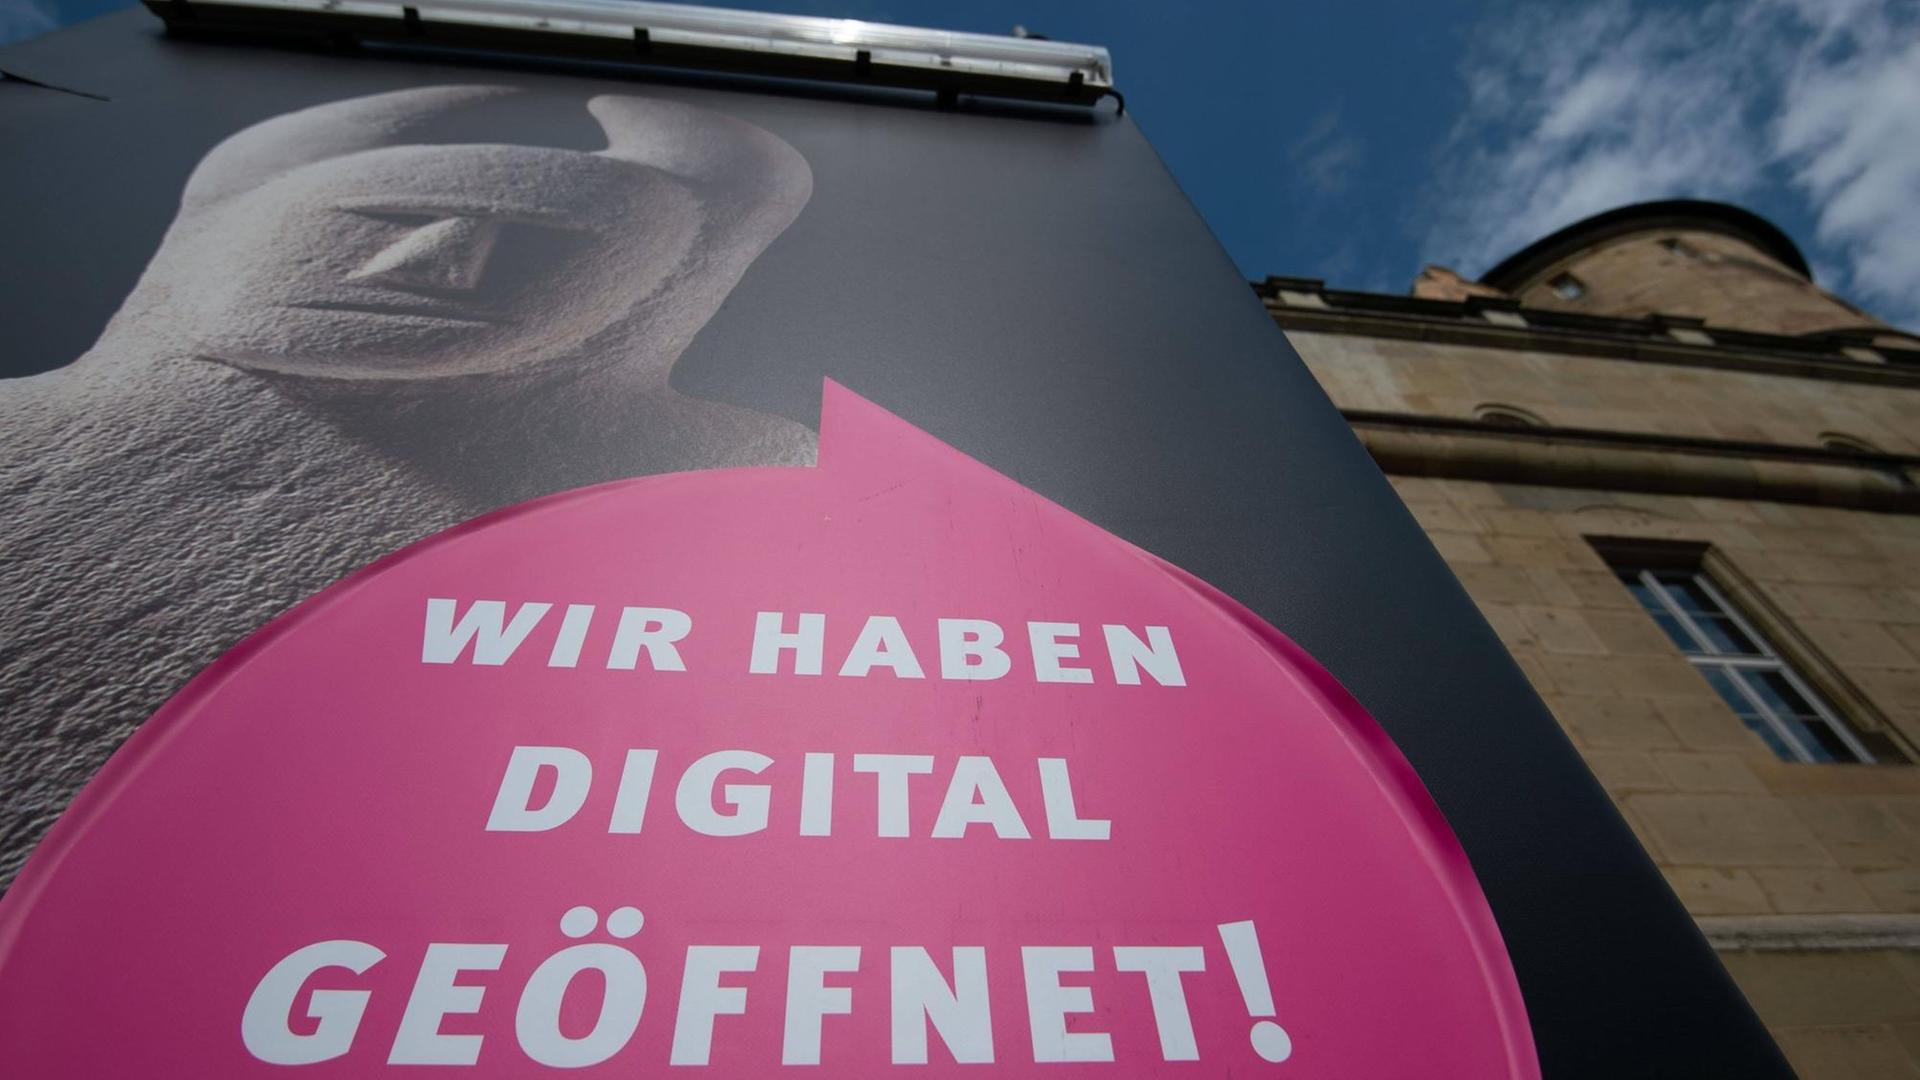 Das Württembergische Landesmuseum in Stuttgart - mit einem Transparent mit der Aufschrift: "Wir haben digital geöffnet".